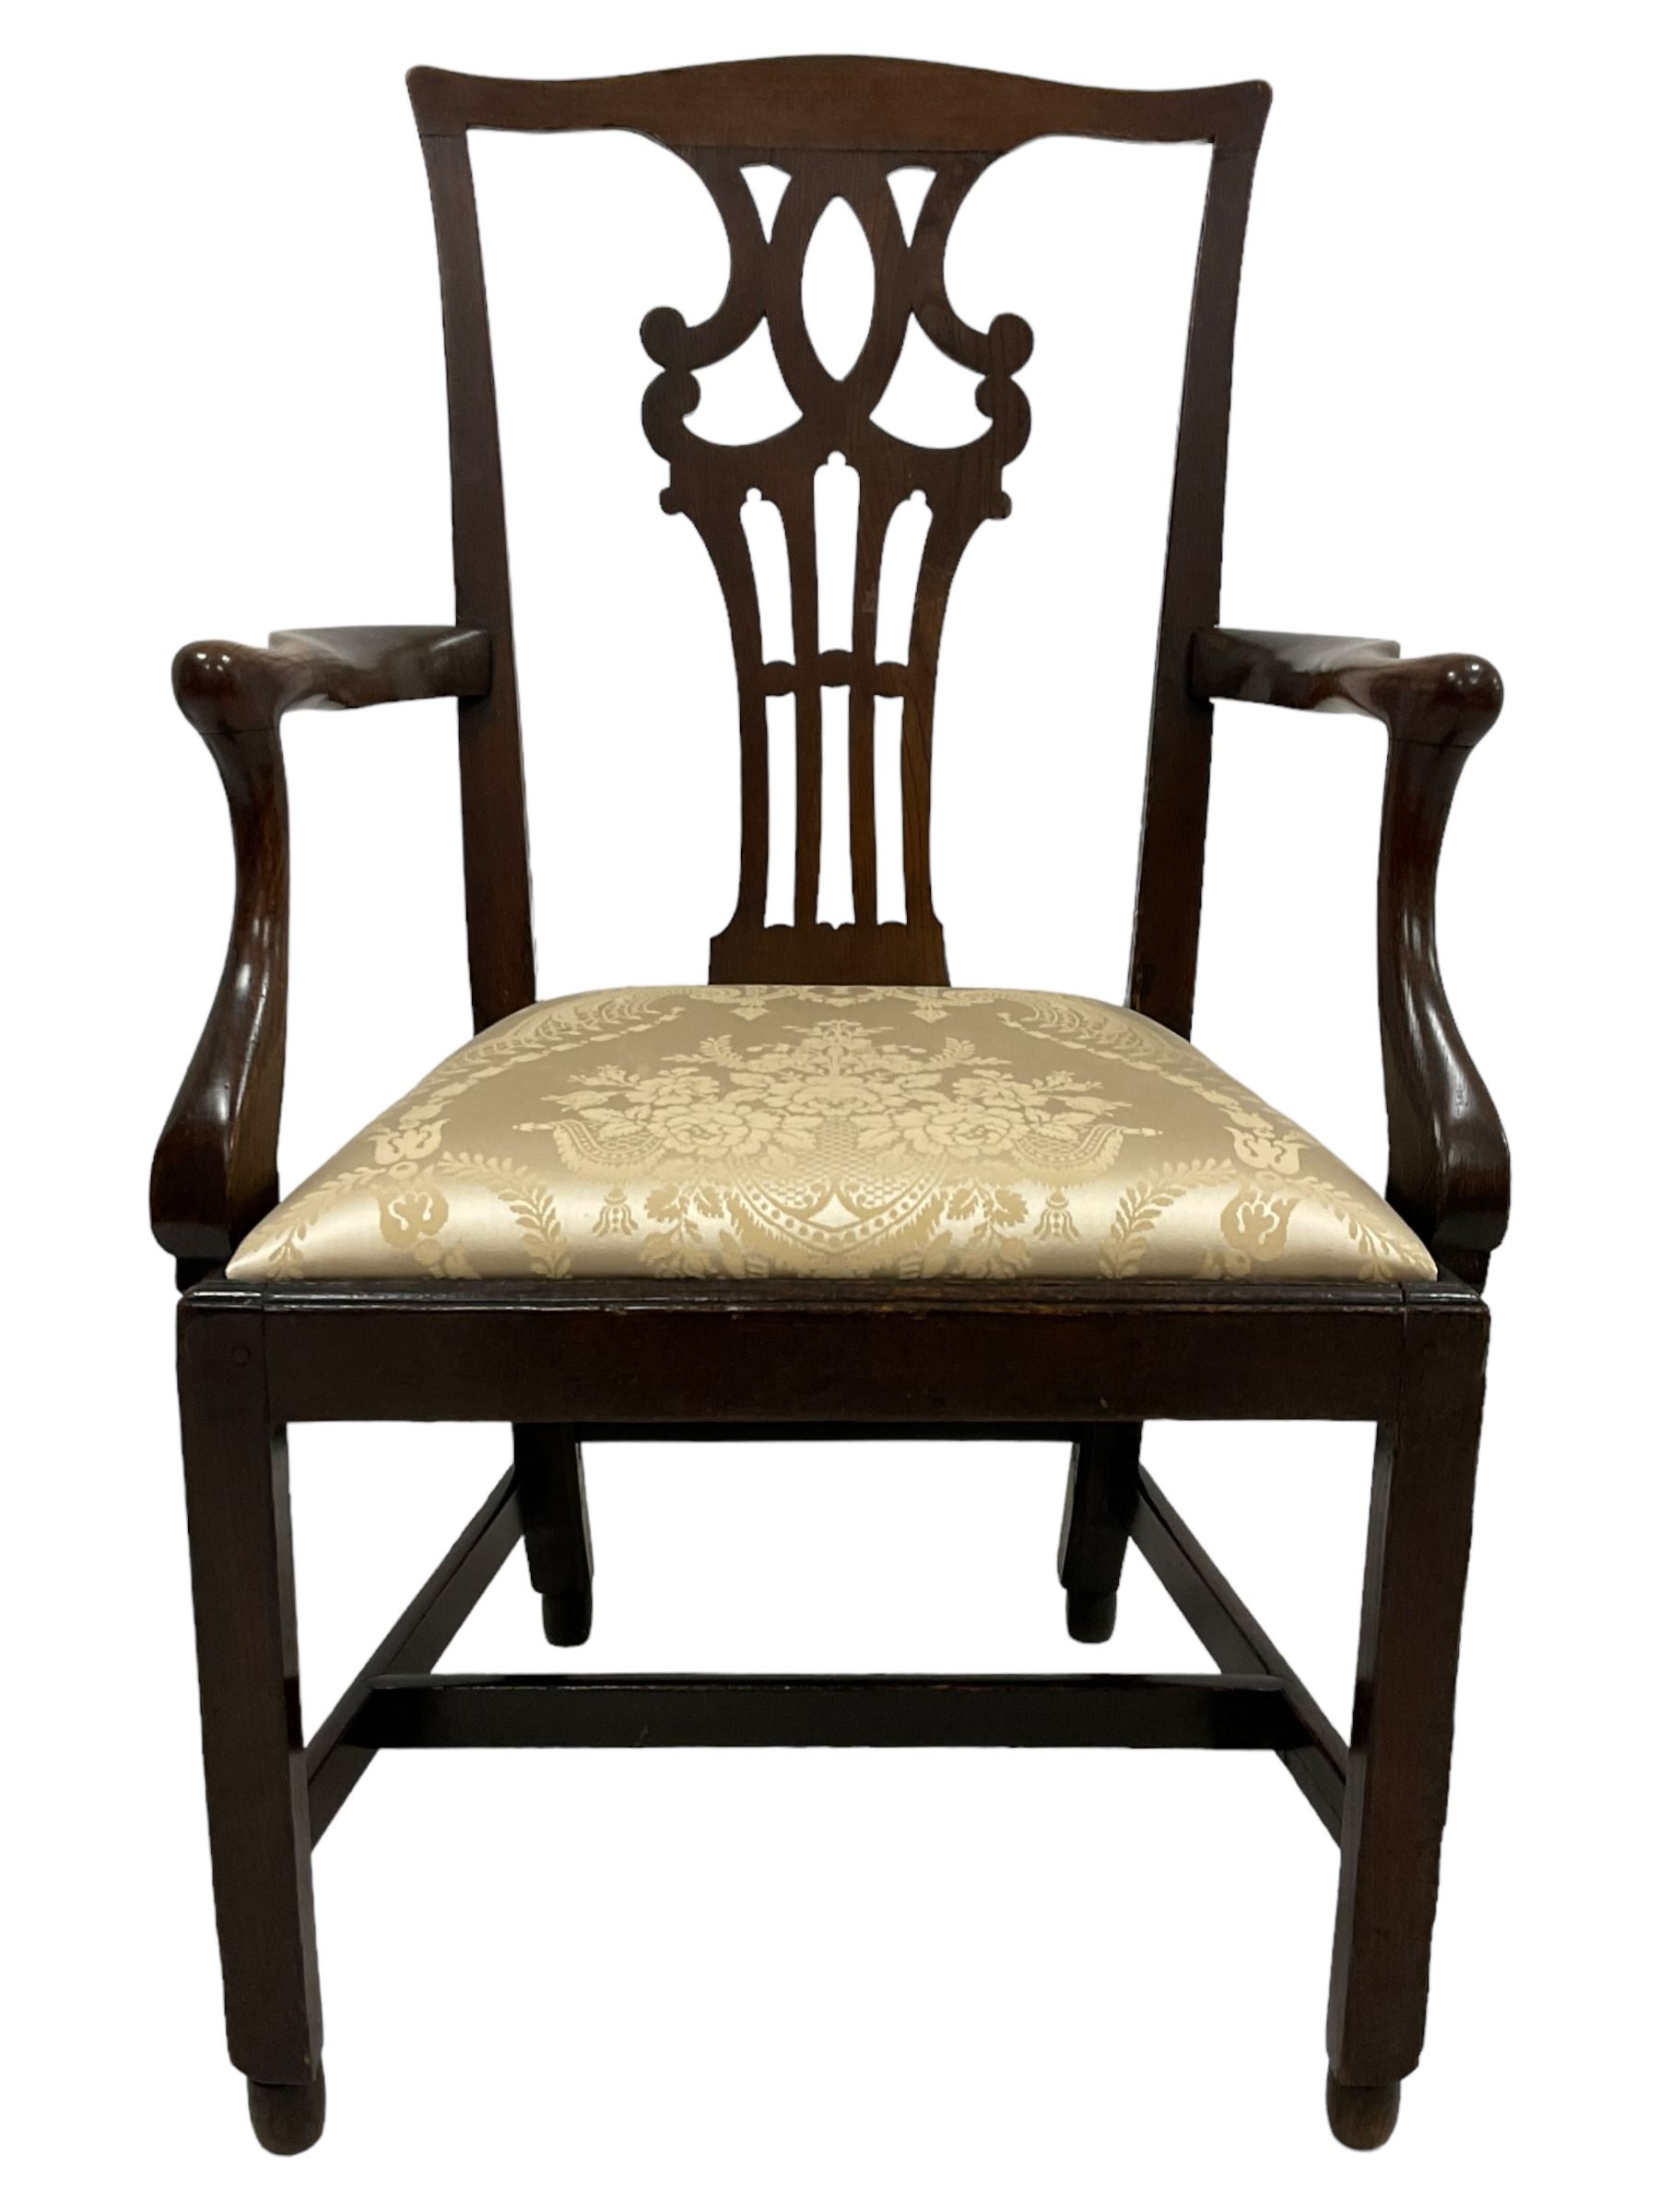 Georgian elm open armchair - Image 2 of 8